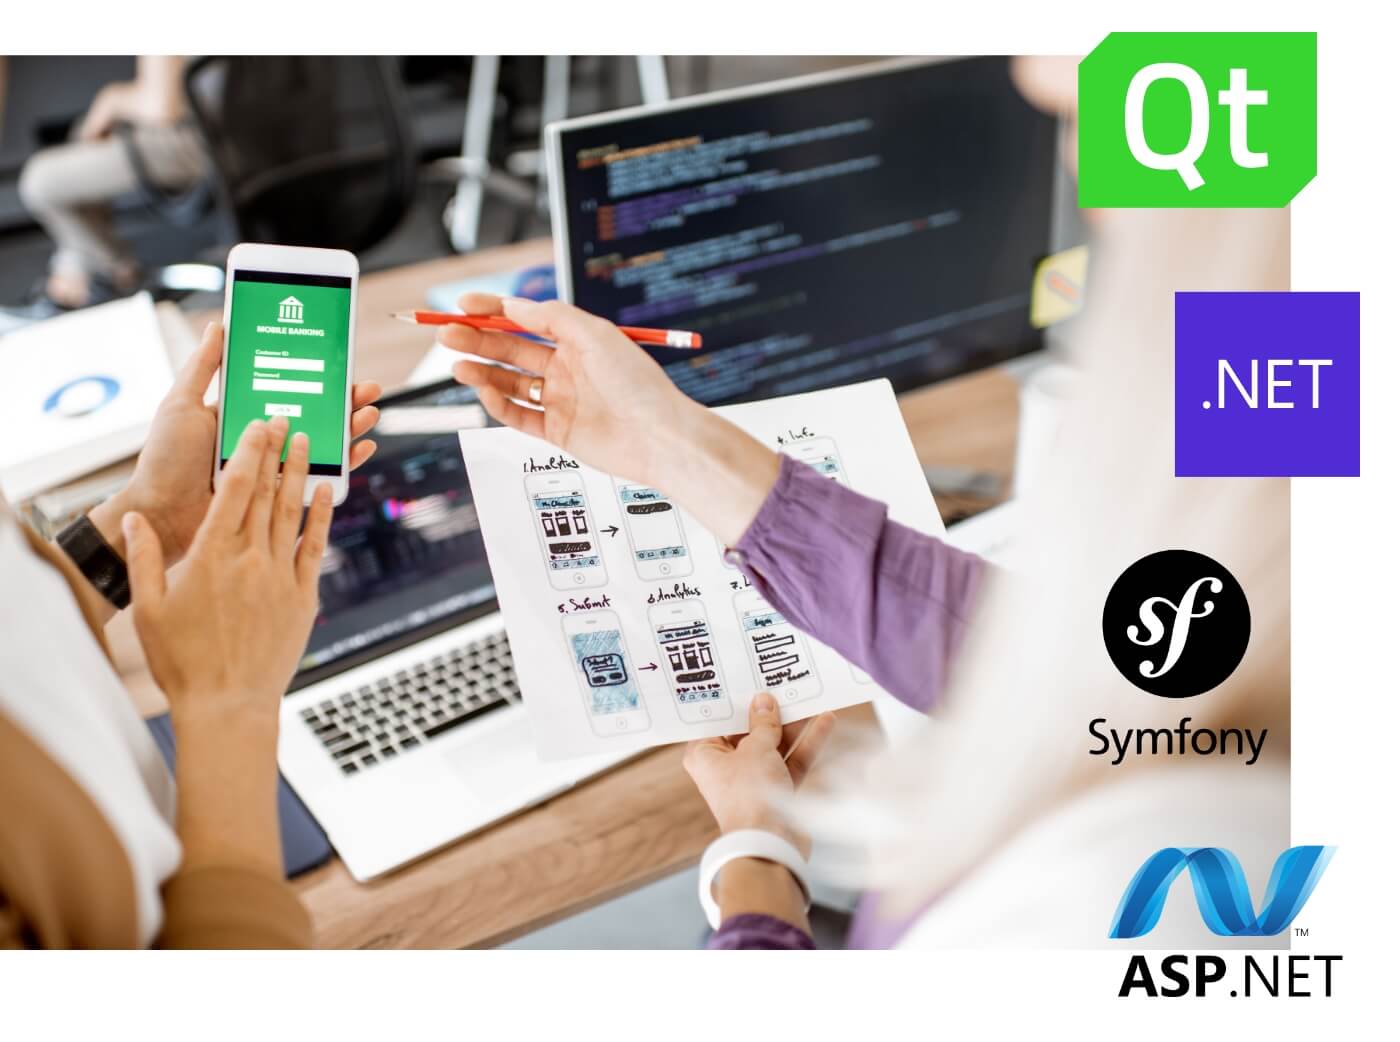 App Entwicklung mit den Technologien von Qt, .NET, Symfony und ASP.NET